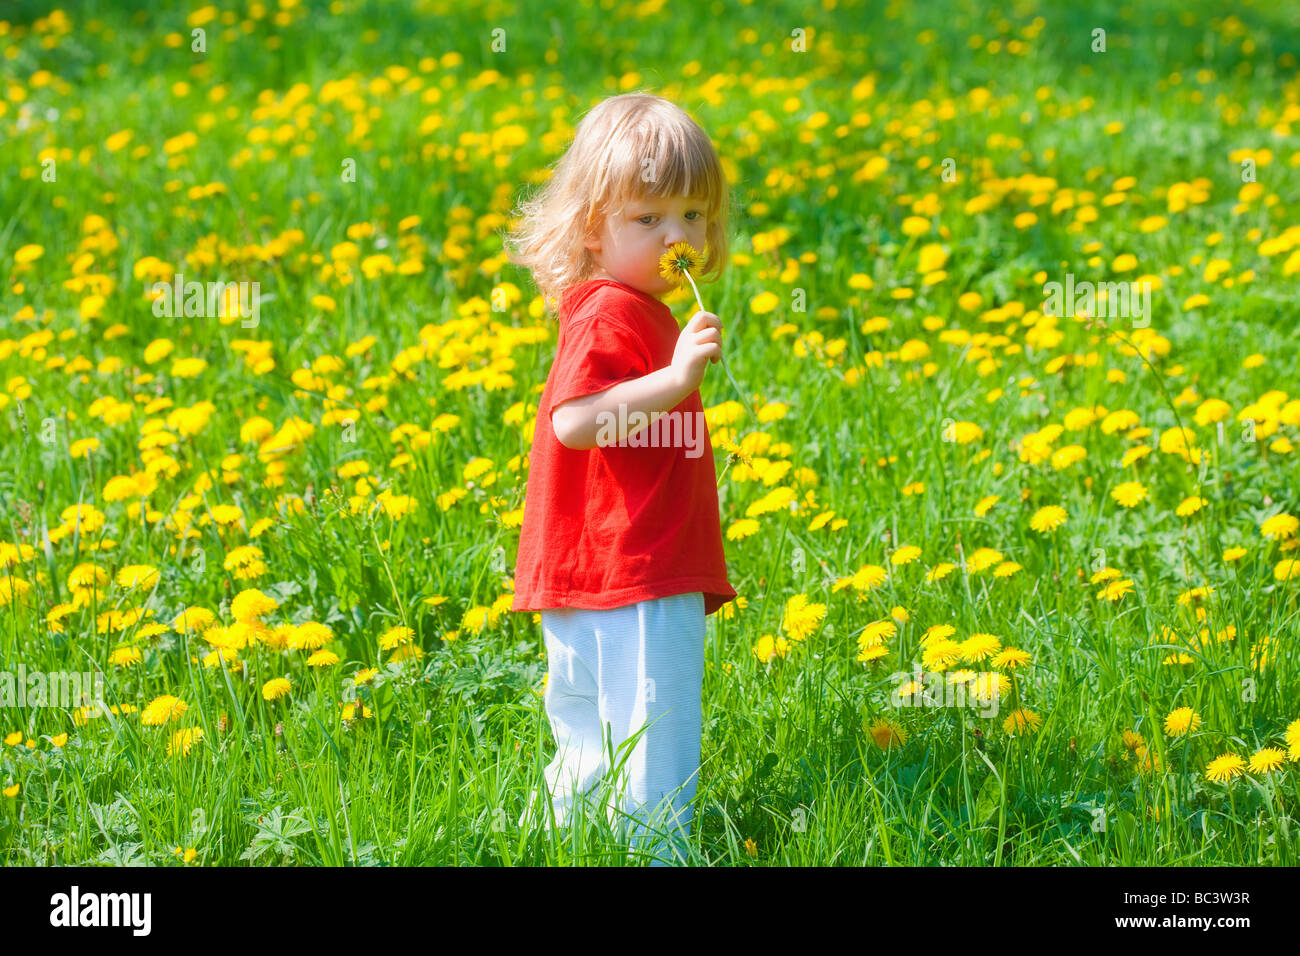 Garçon 2 5 ans holding dandelion debout dans un champ de printemps Banque D'Images